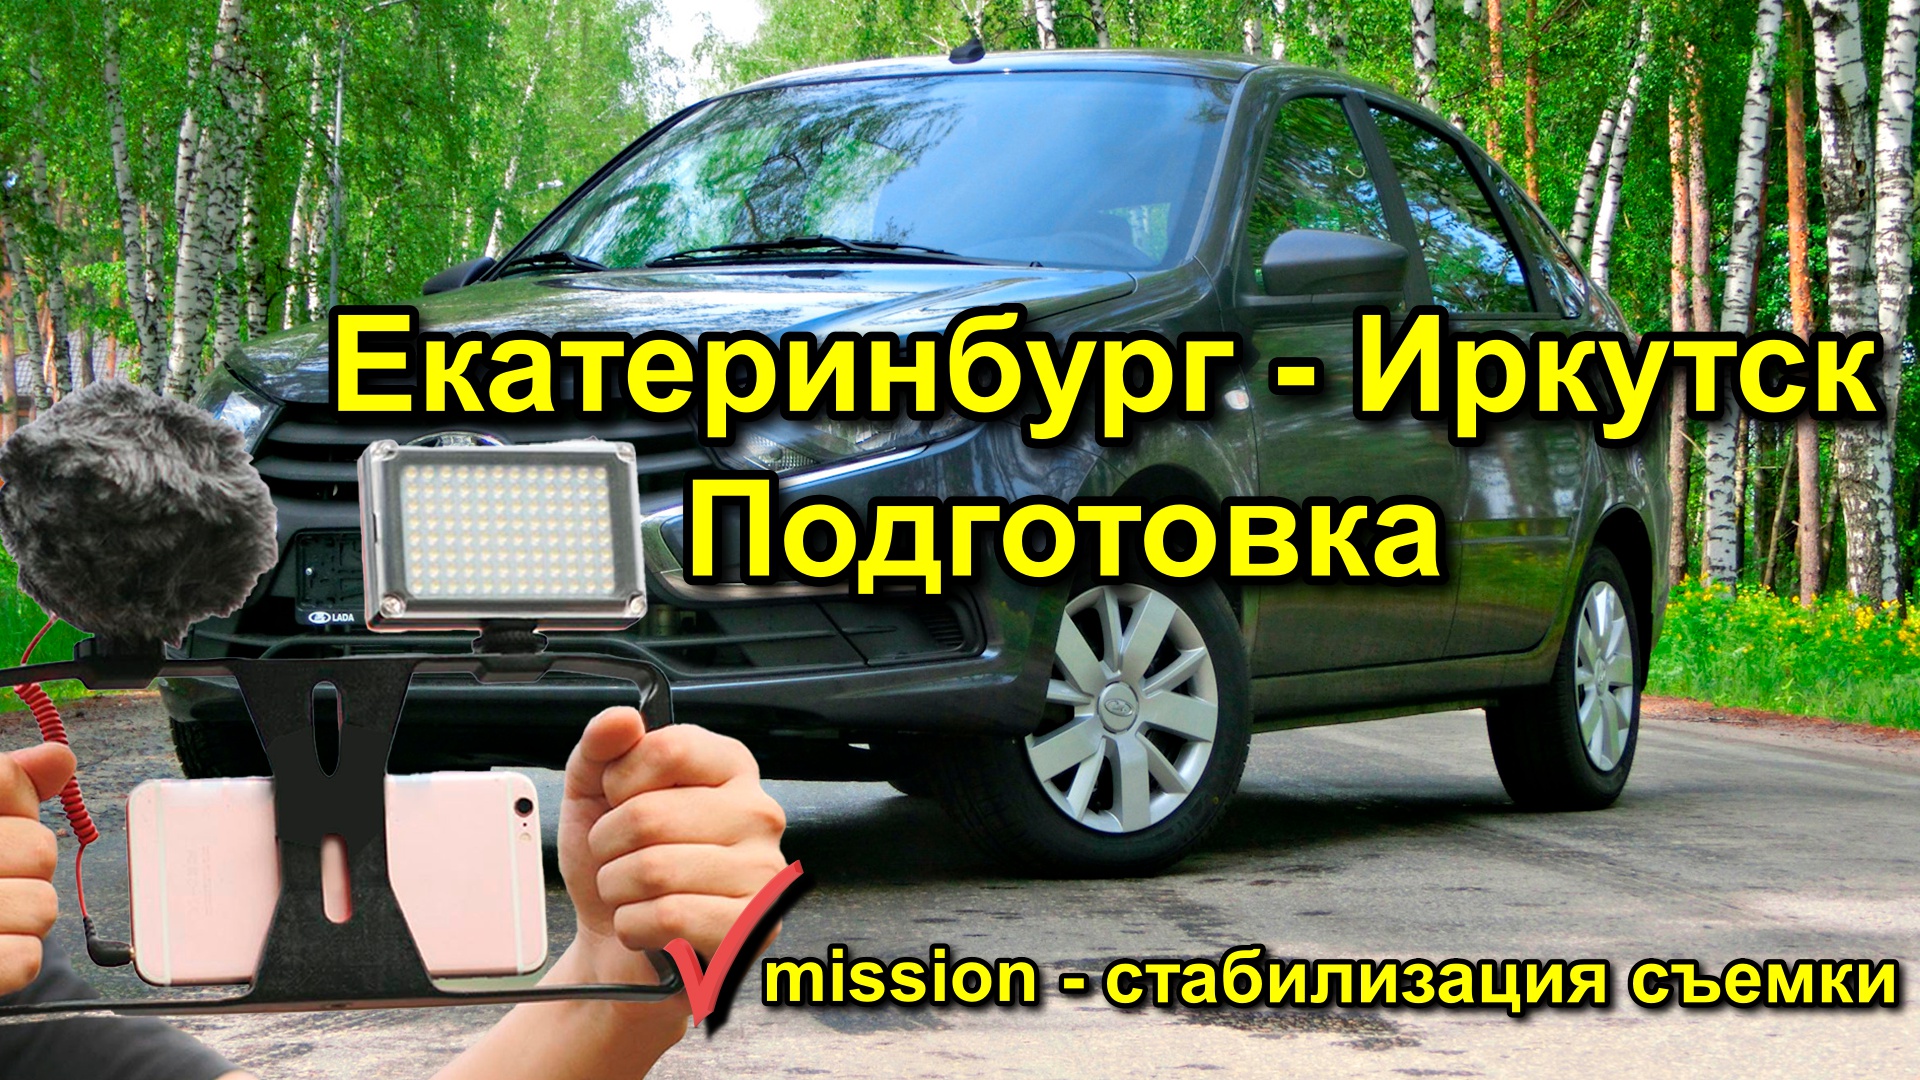 Как снимать из машины в путешествии на айфон? Подготовка к поездке Екатеринбург - Иркутск